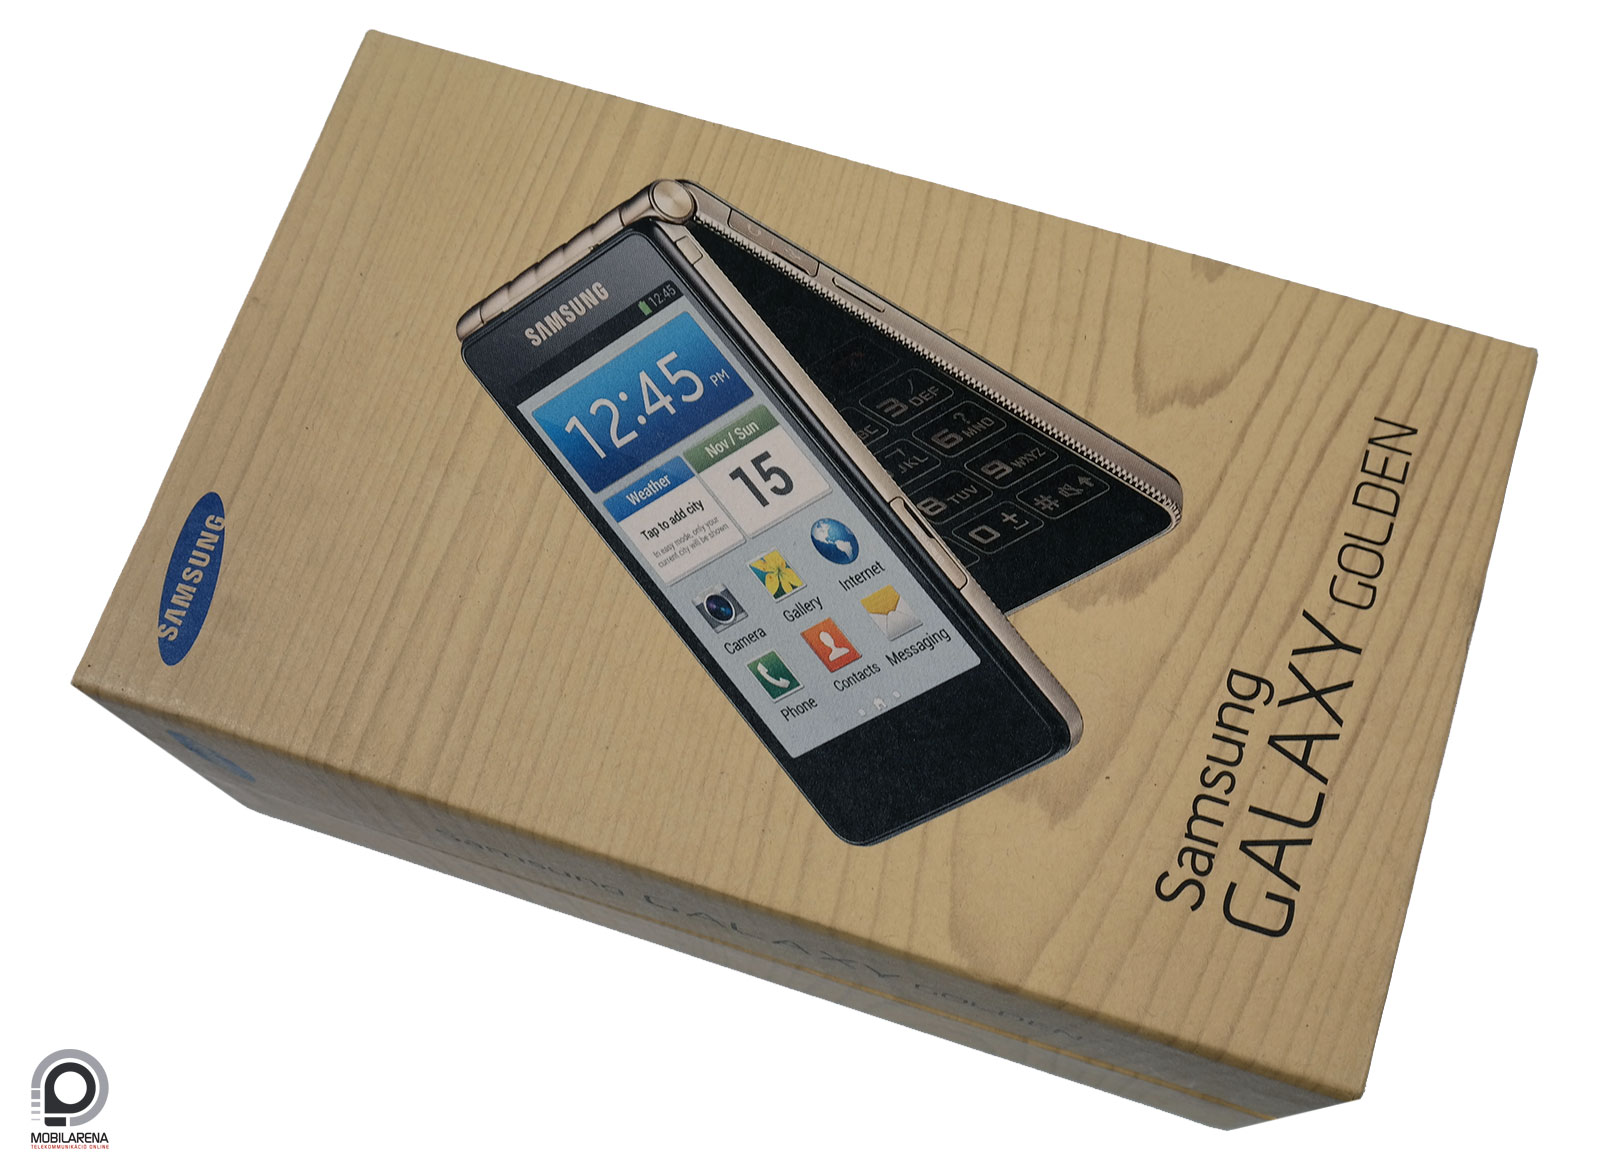 Samsung Galaxy Golden - tárt karokkal - Mobilarena Okostelefon teszt -  Nyomtatóbarát verzió